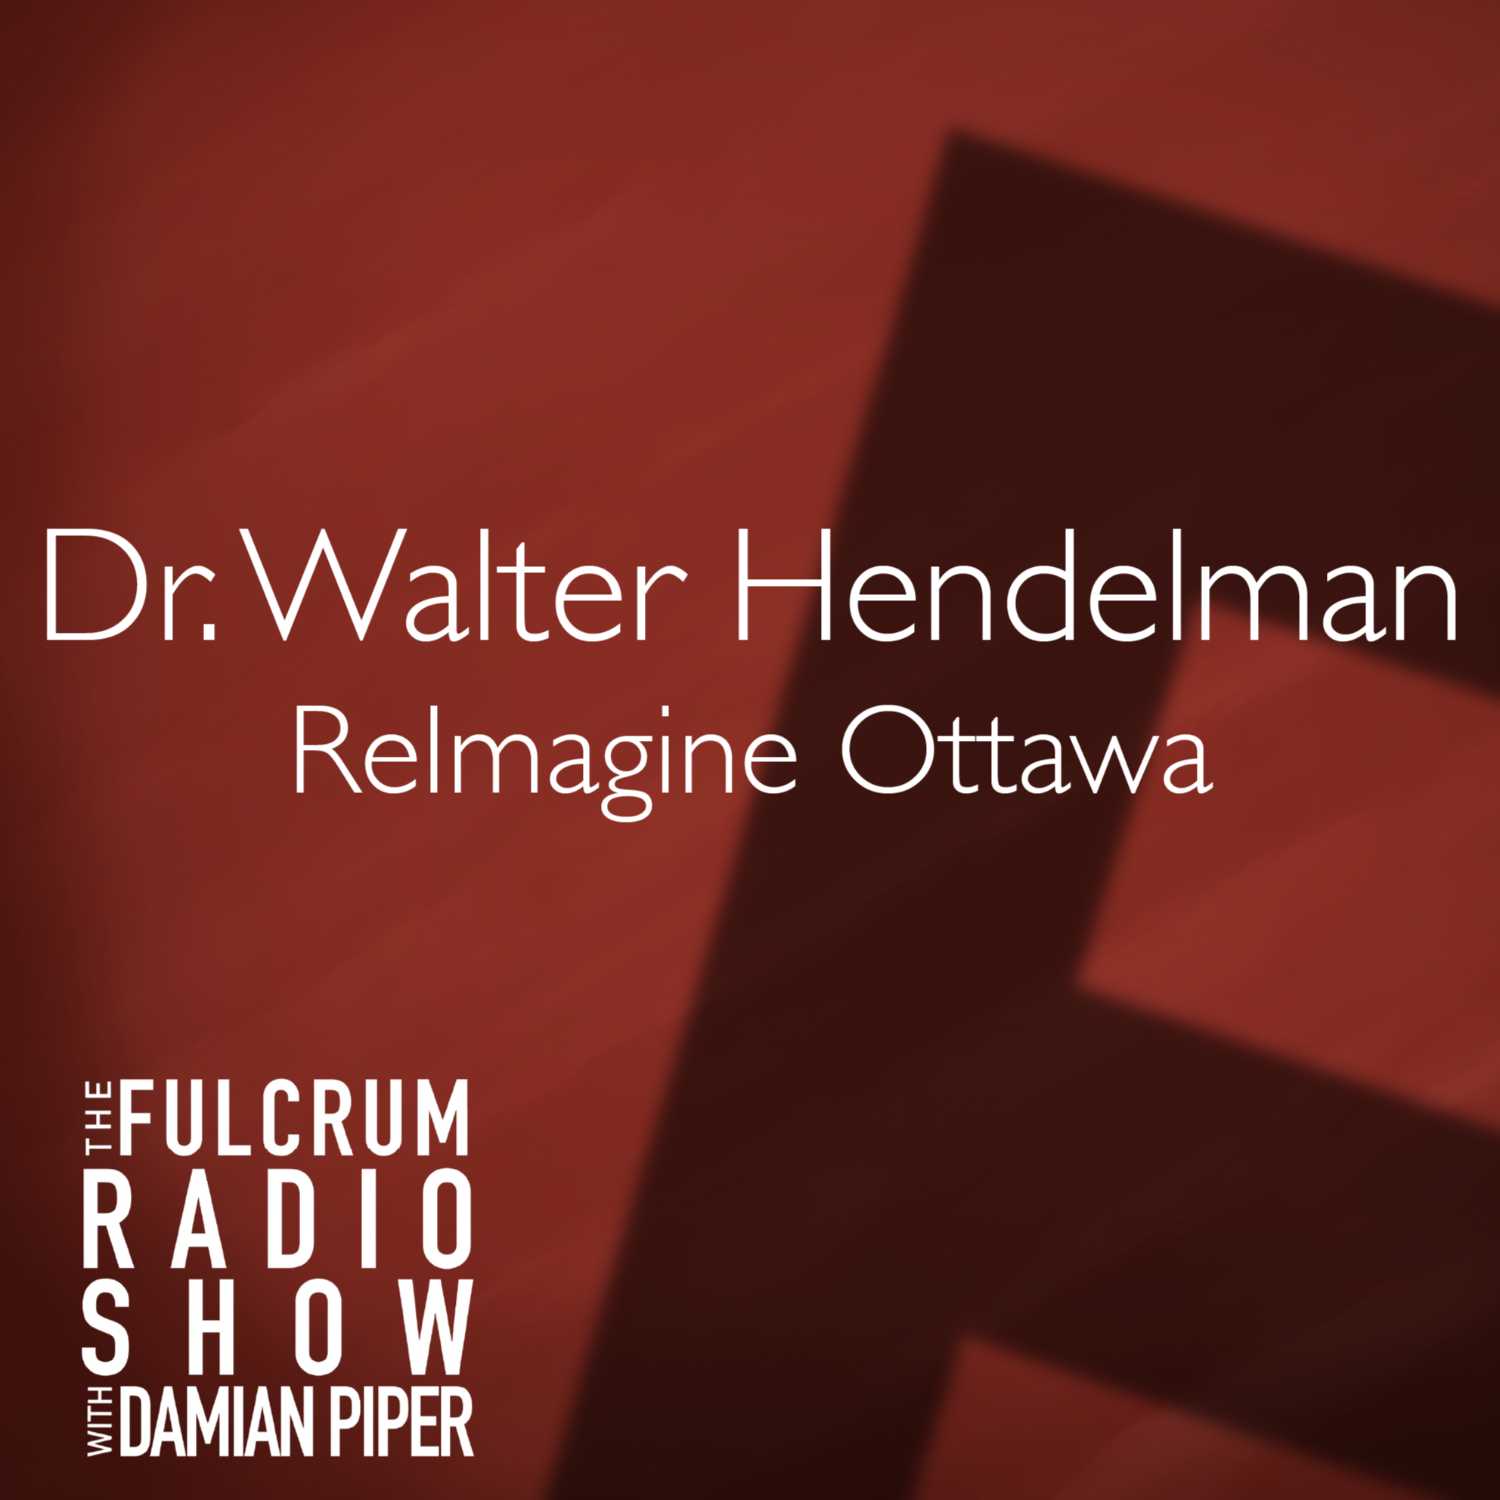 FULCRUM SPECIAL: Dr. Walter Hendelman, ReimagineOttawa